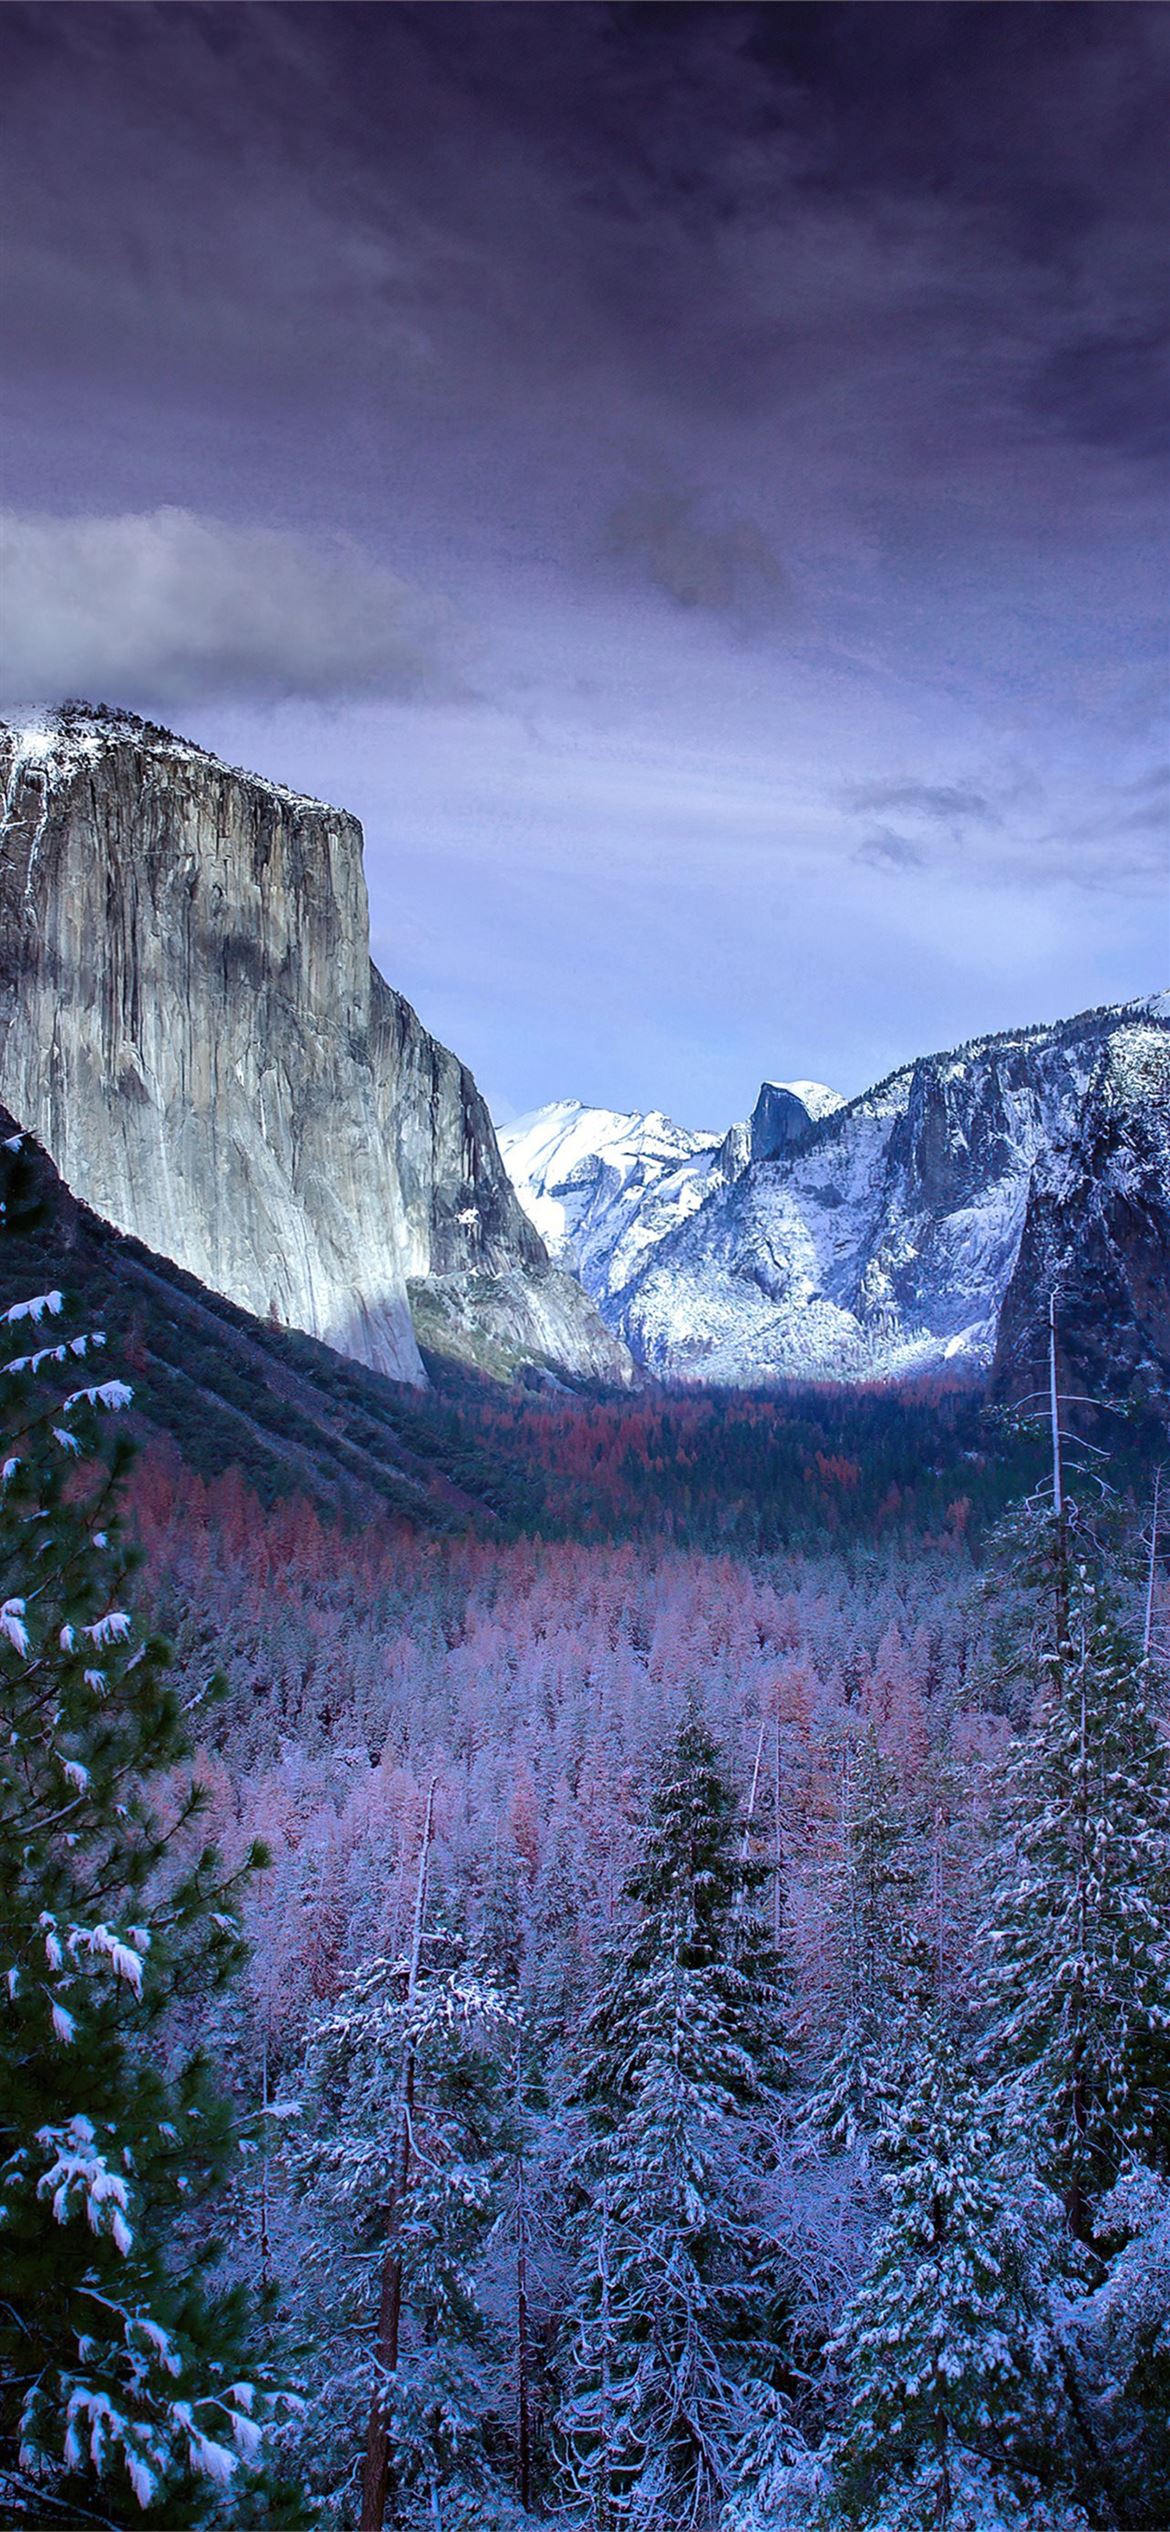 Yosemite: Nếu bạn yêu thích sự tươi mới và mát lành của thiên nhiên, thì chắc chắn không thể bỏ qua ảnh liên quan đến Yosemite - một trong những công viên quốc gia đẹp nhất tại Mỹ. Chiêm ngưỡng khung cảnh hùng vĩ và đẹp tuyệt vời trong bức ảnh làm bạn thật sự thư thái và thoải mái.